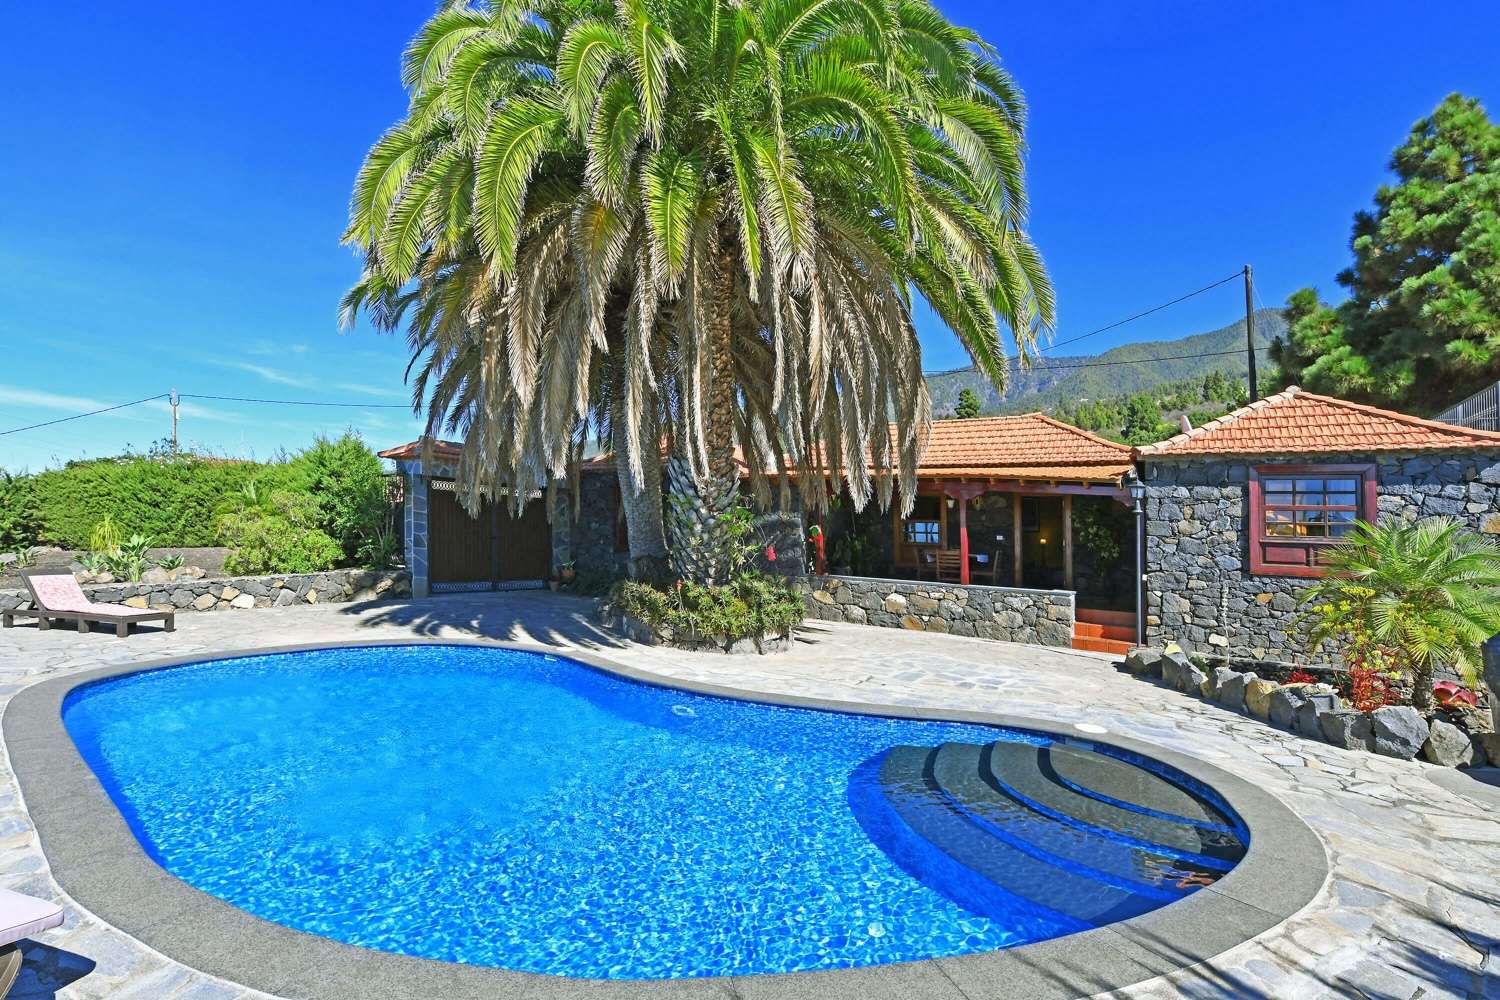 Bella casa con due camere da letto nell'architettura originale in pietra delle Canarie con un magnifico giardino con maestose palme e una piscina privata